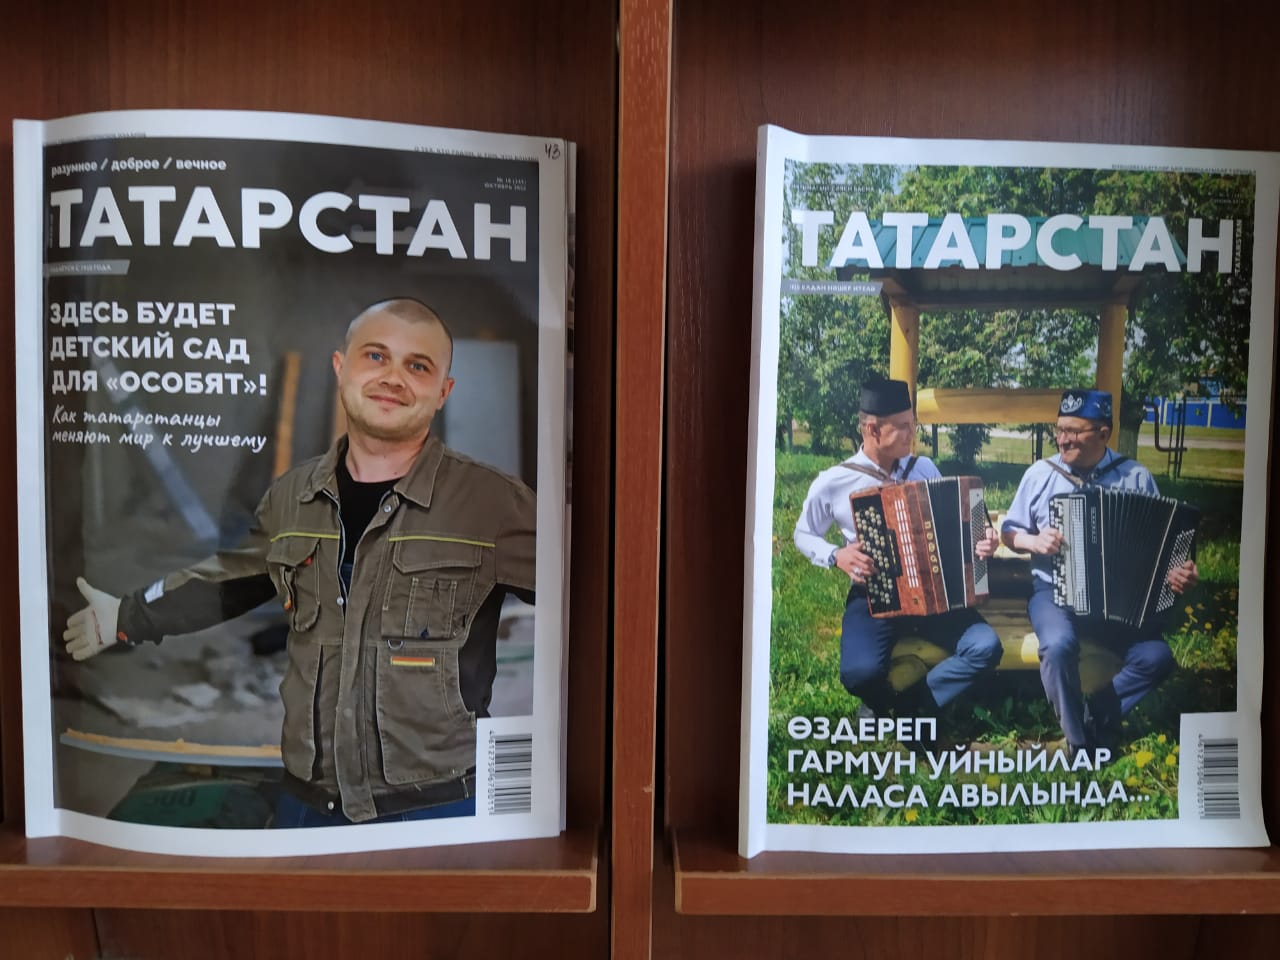 Читатели Республиканской юношеской библиотеки РТ любят журнал "Татарстан"